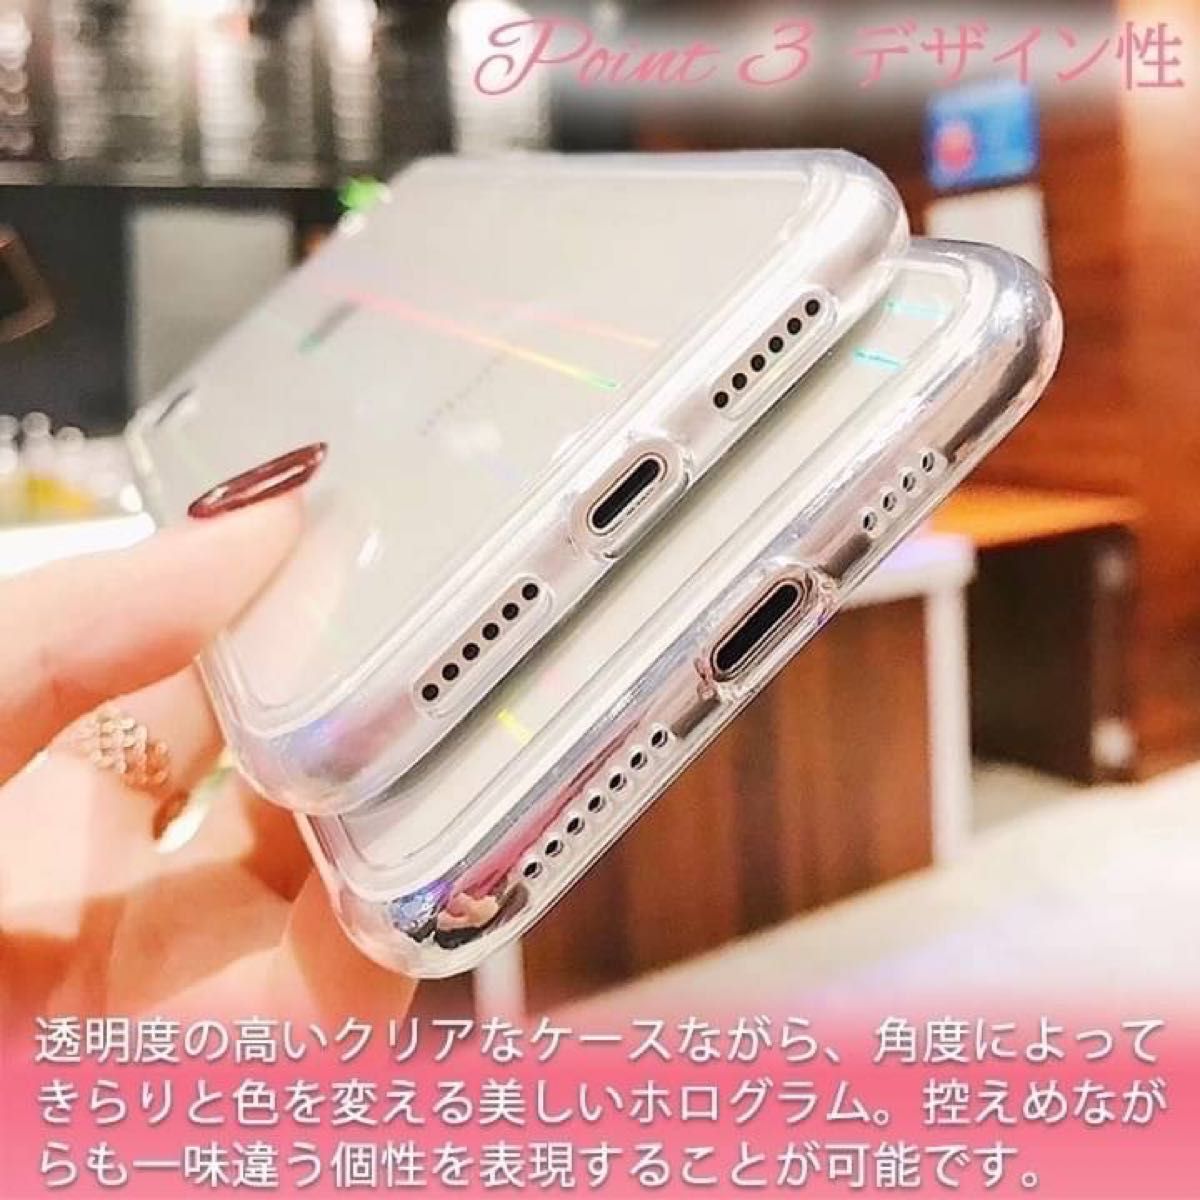 iPhone11 オーロラiPhoneケース　韓国 透明 クリア かわいい スマホケース TPU クリア